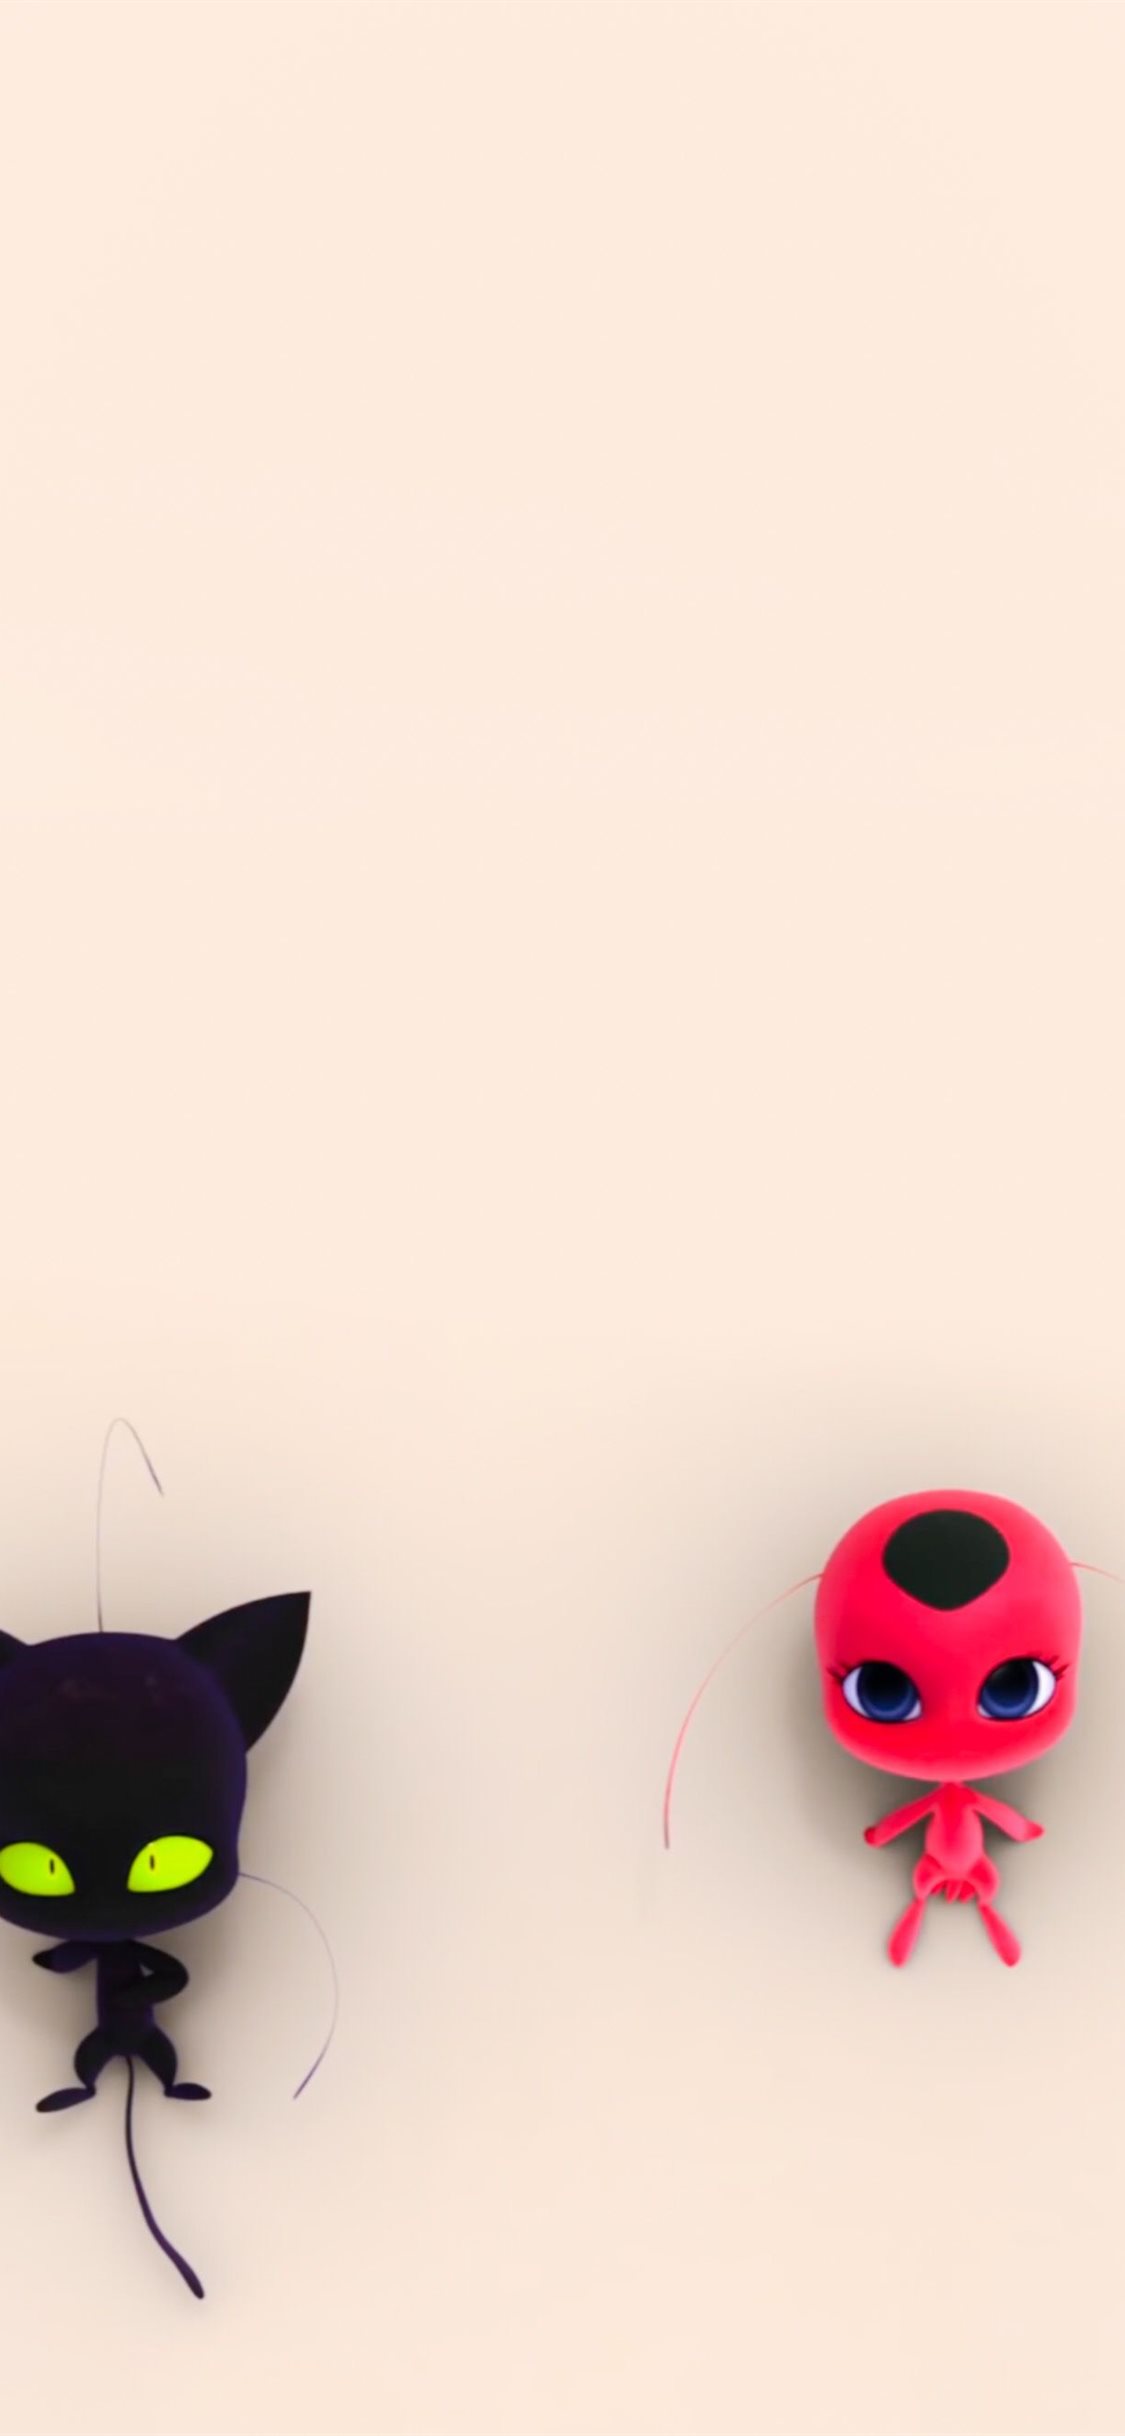 Ladybug - Ladybugs Wallpaper (42635796) - Fanpop